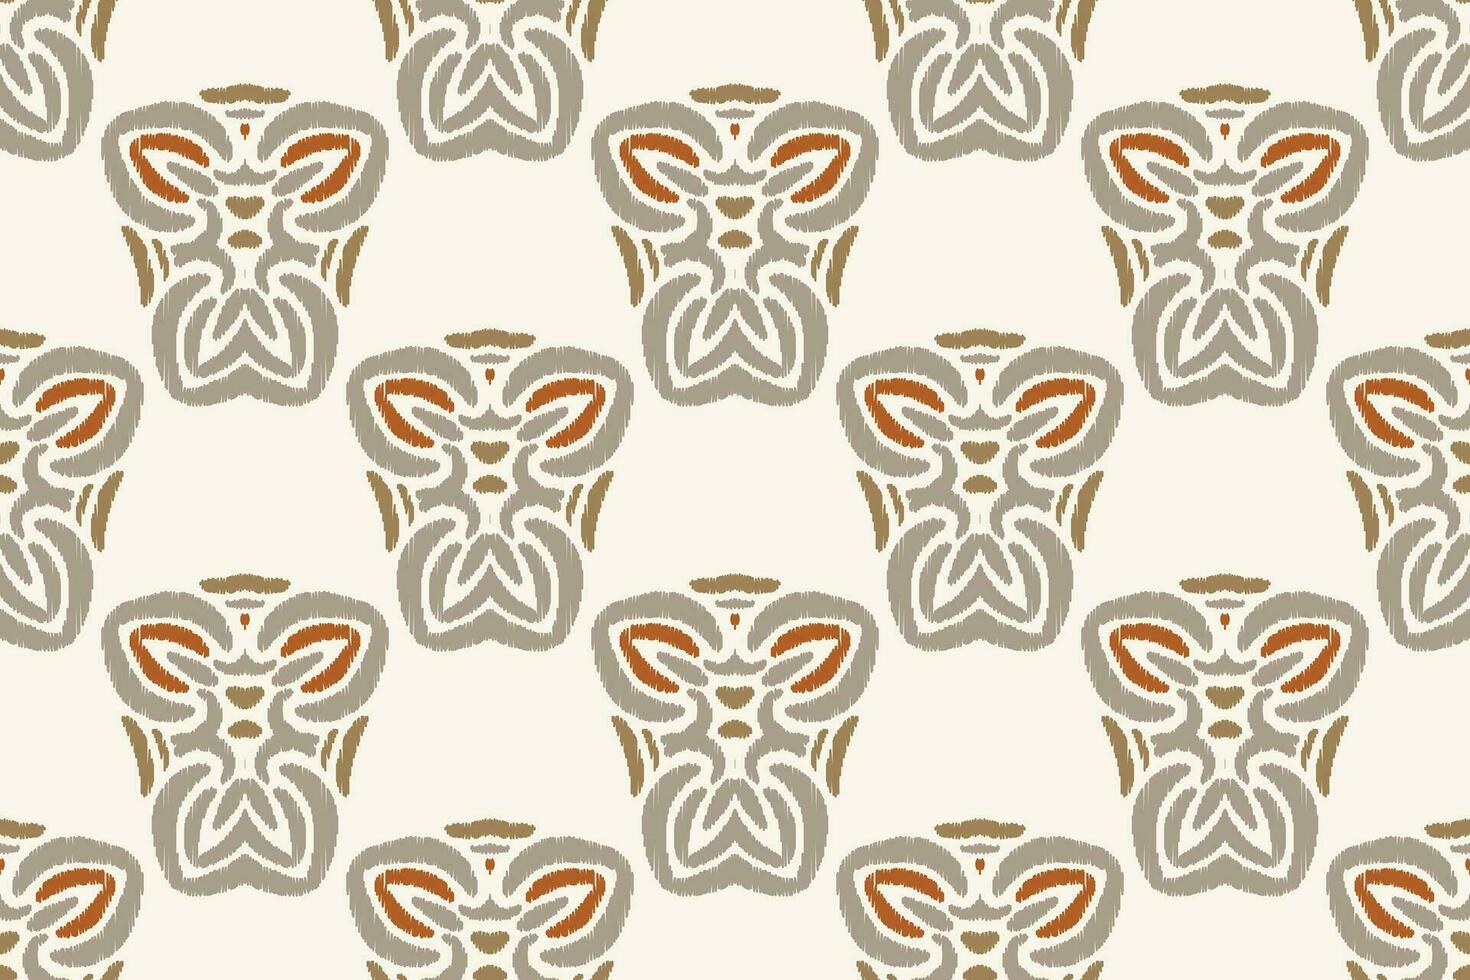 motiv ikat paisley broderi bakgrund. ikat bakgrund geometrisk etnisk orientalisk mönster traditionell.aztec stil abstrakt vektor illustration.design för textur, tyg, kläder, inslagning, sarong.